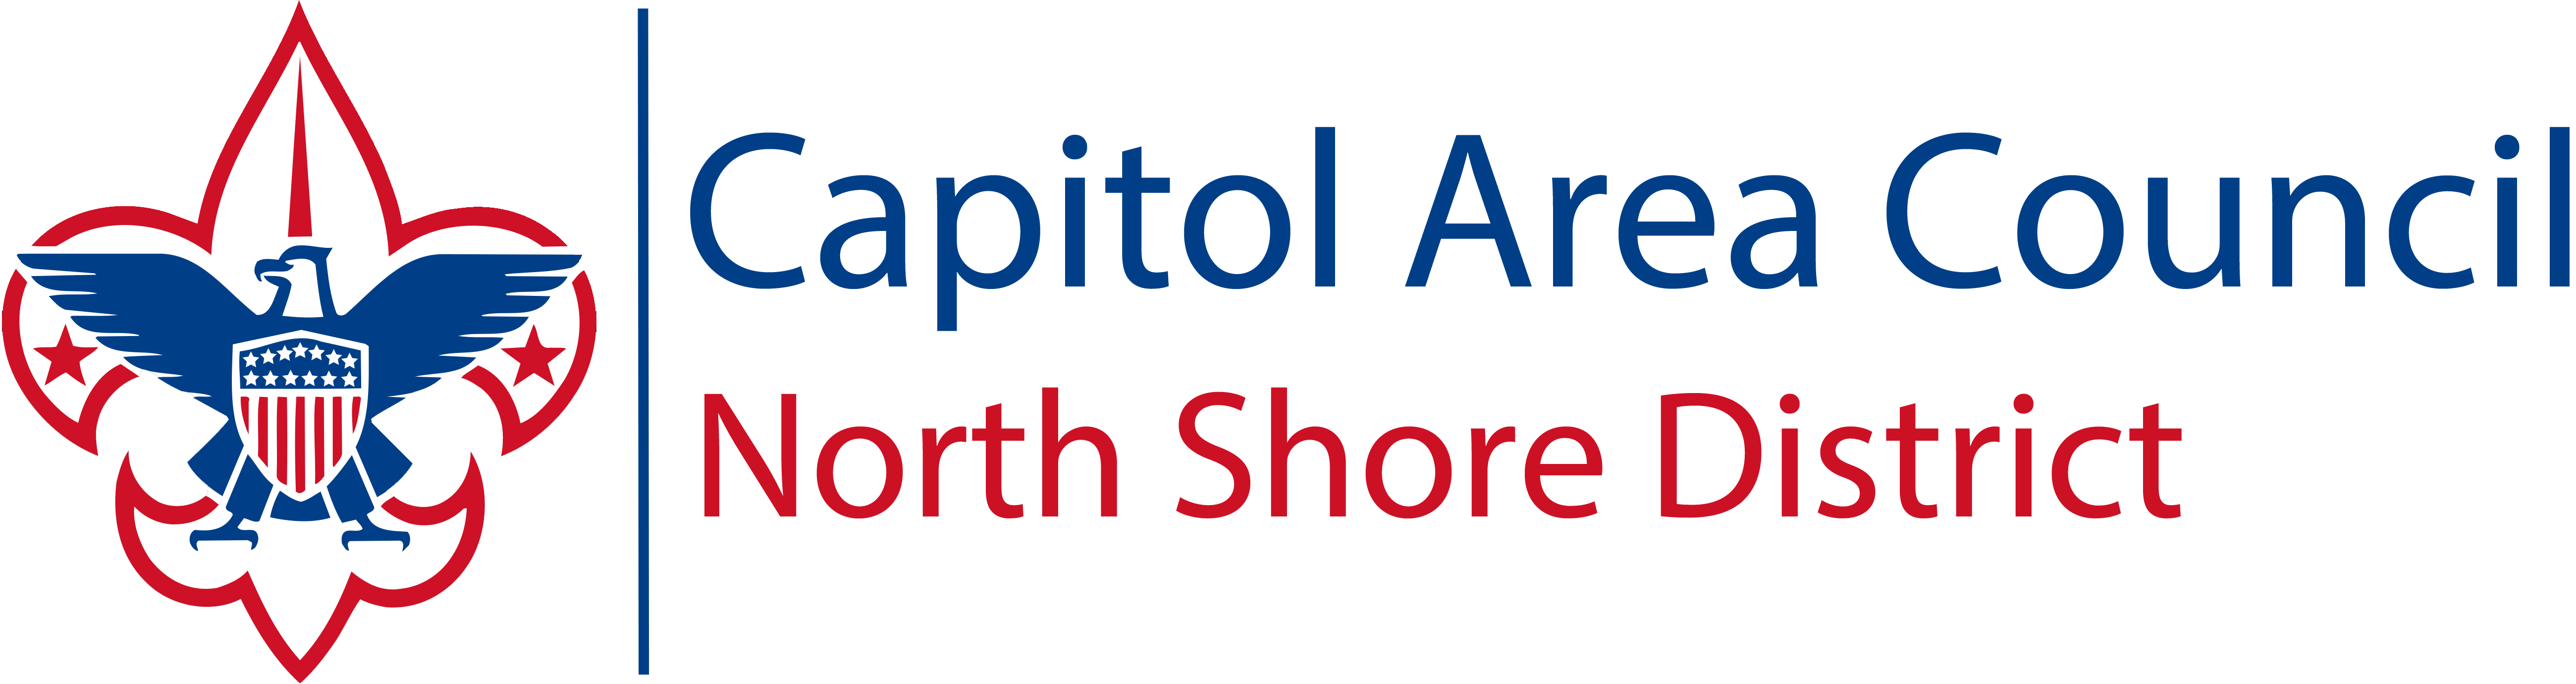 North Shore District